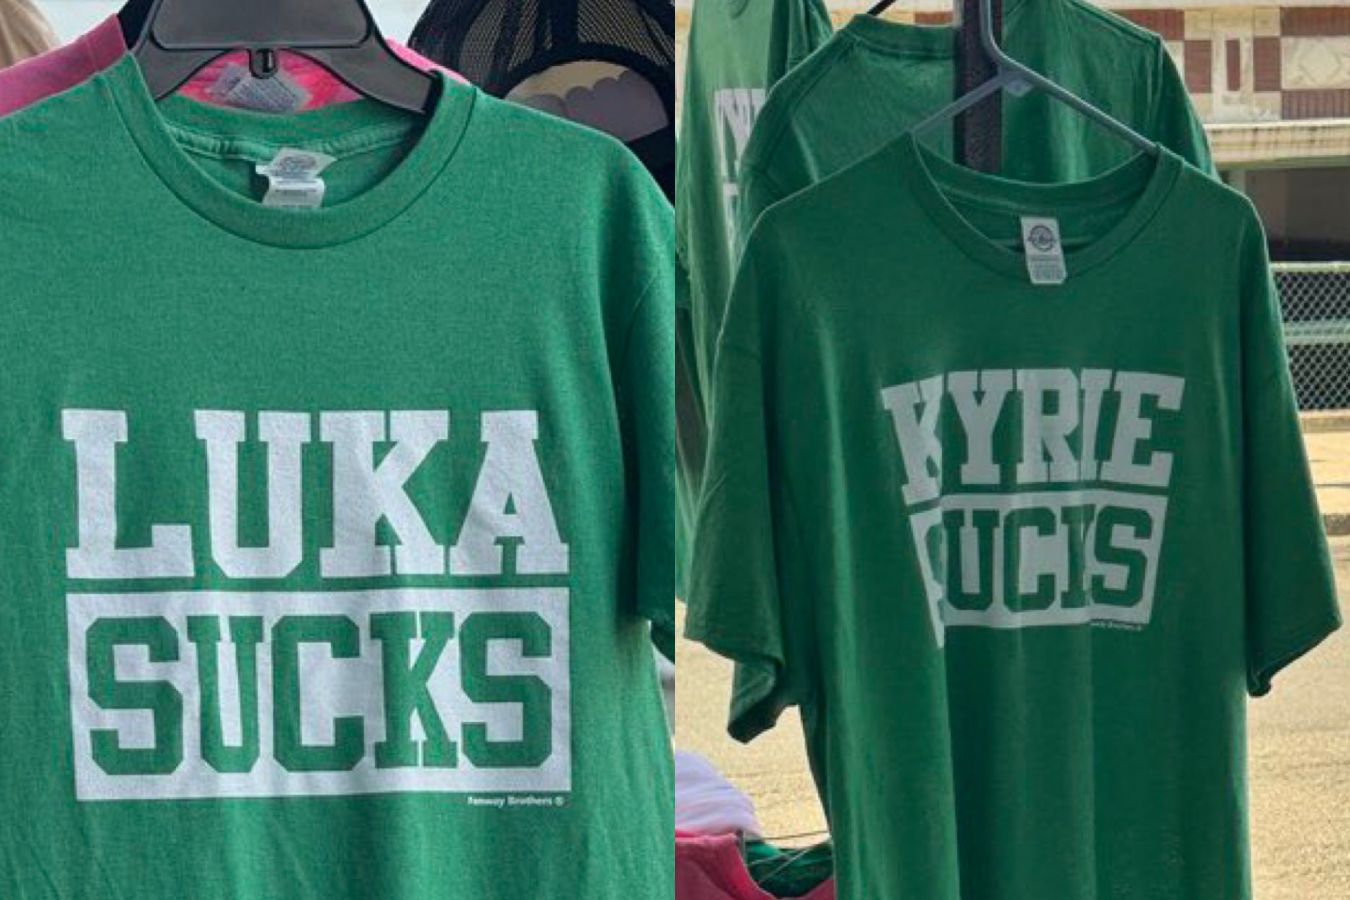 Лука  отстой. В магазинах Бостона появились специальные футболки перед финалом НБА